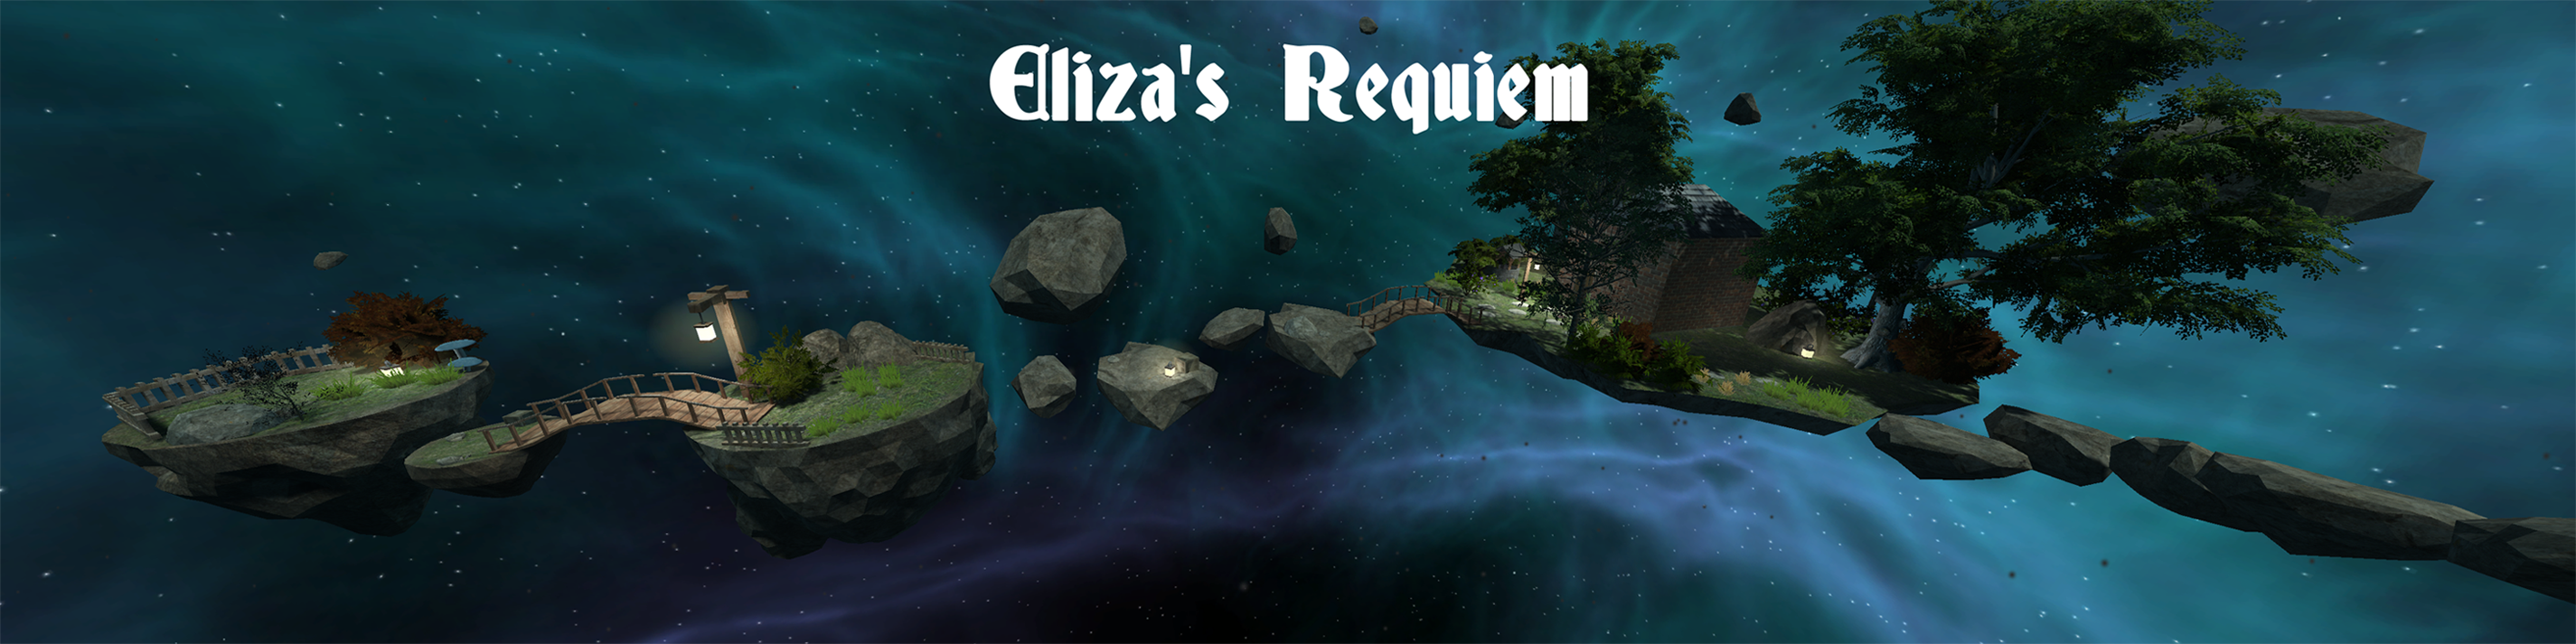 Eliza's Requiem